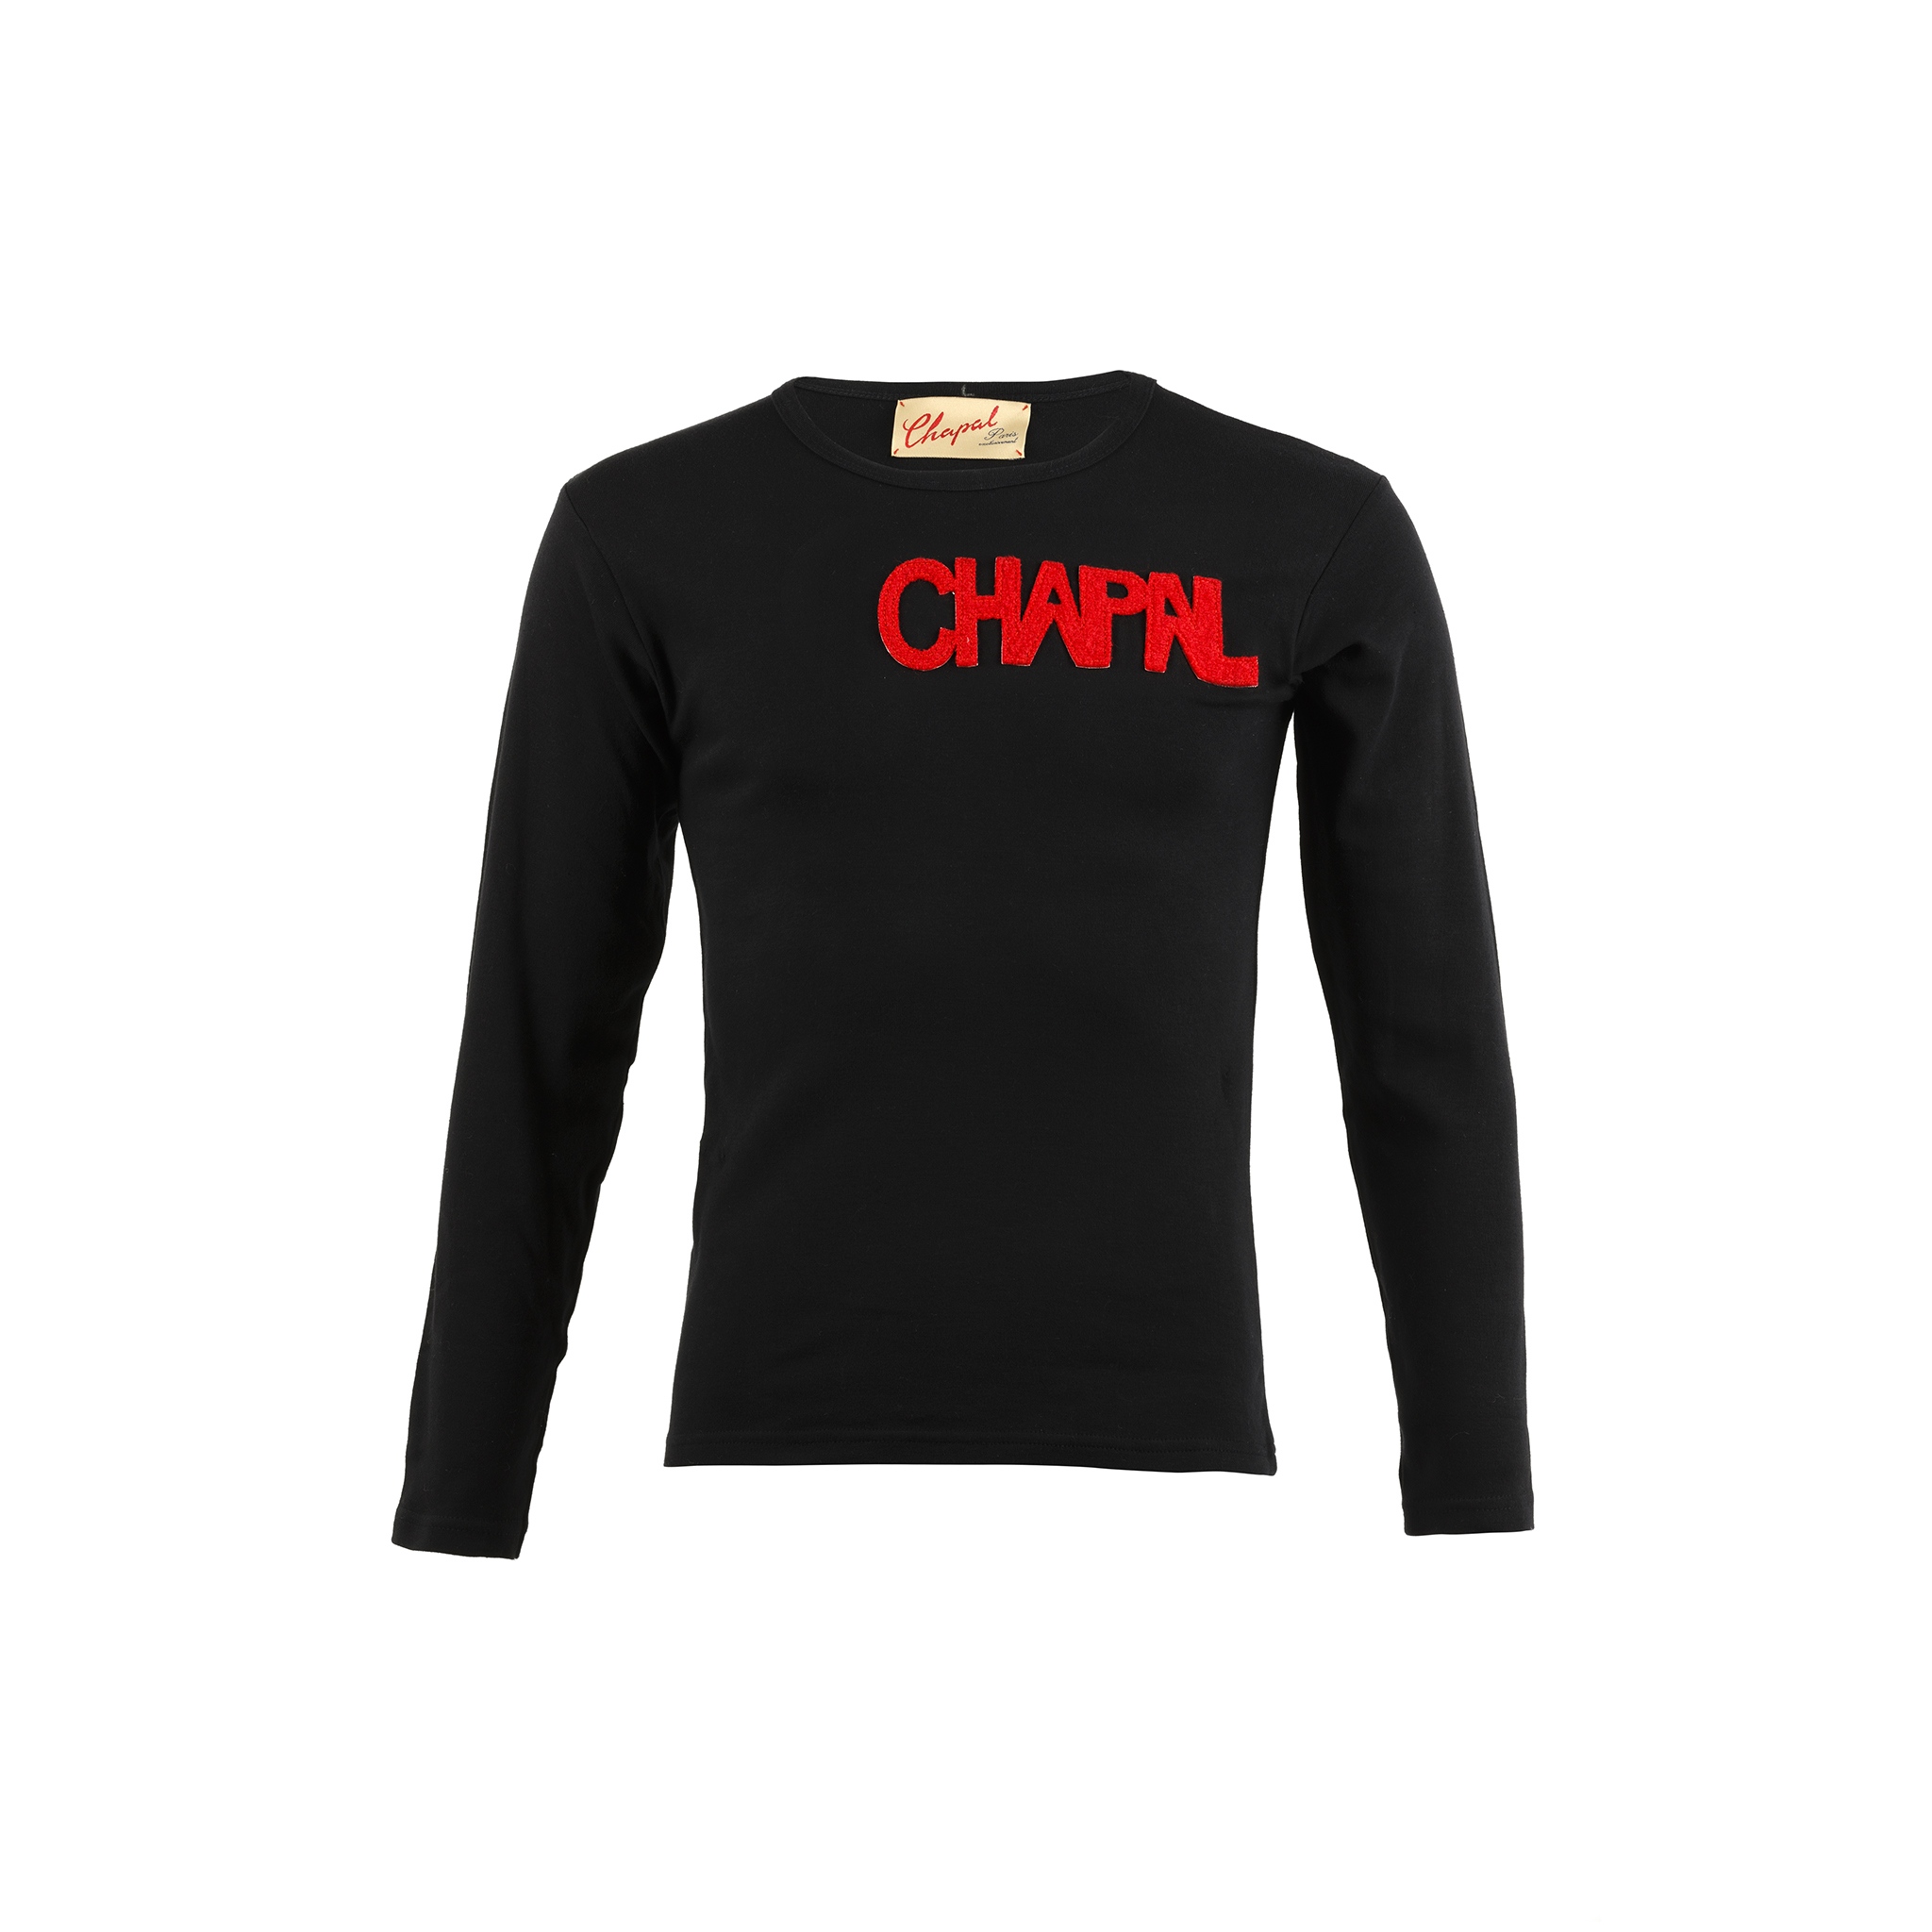 T-shirt Lettres Manches Longues - Jersey de coton et laine - Couleurs noir et rouge